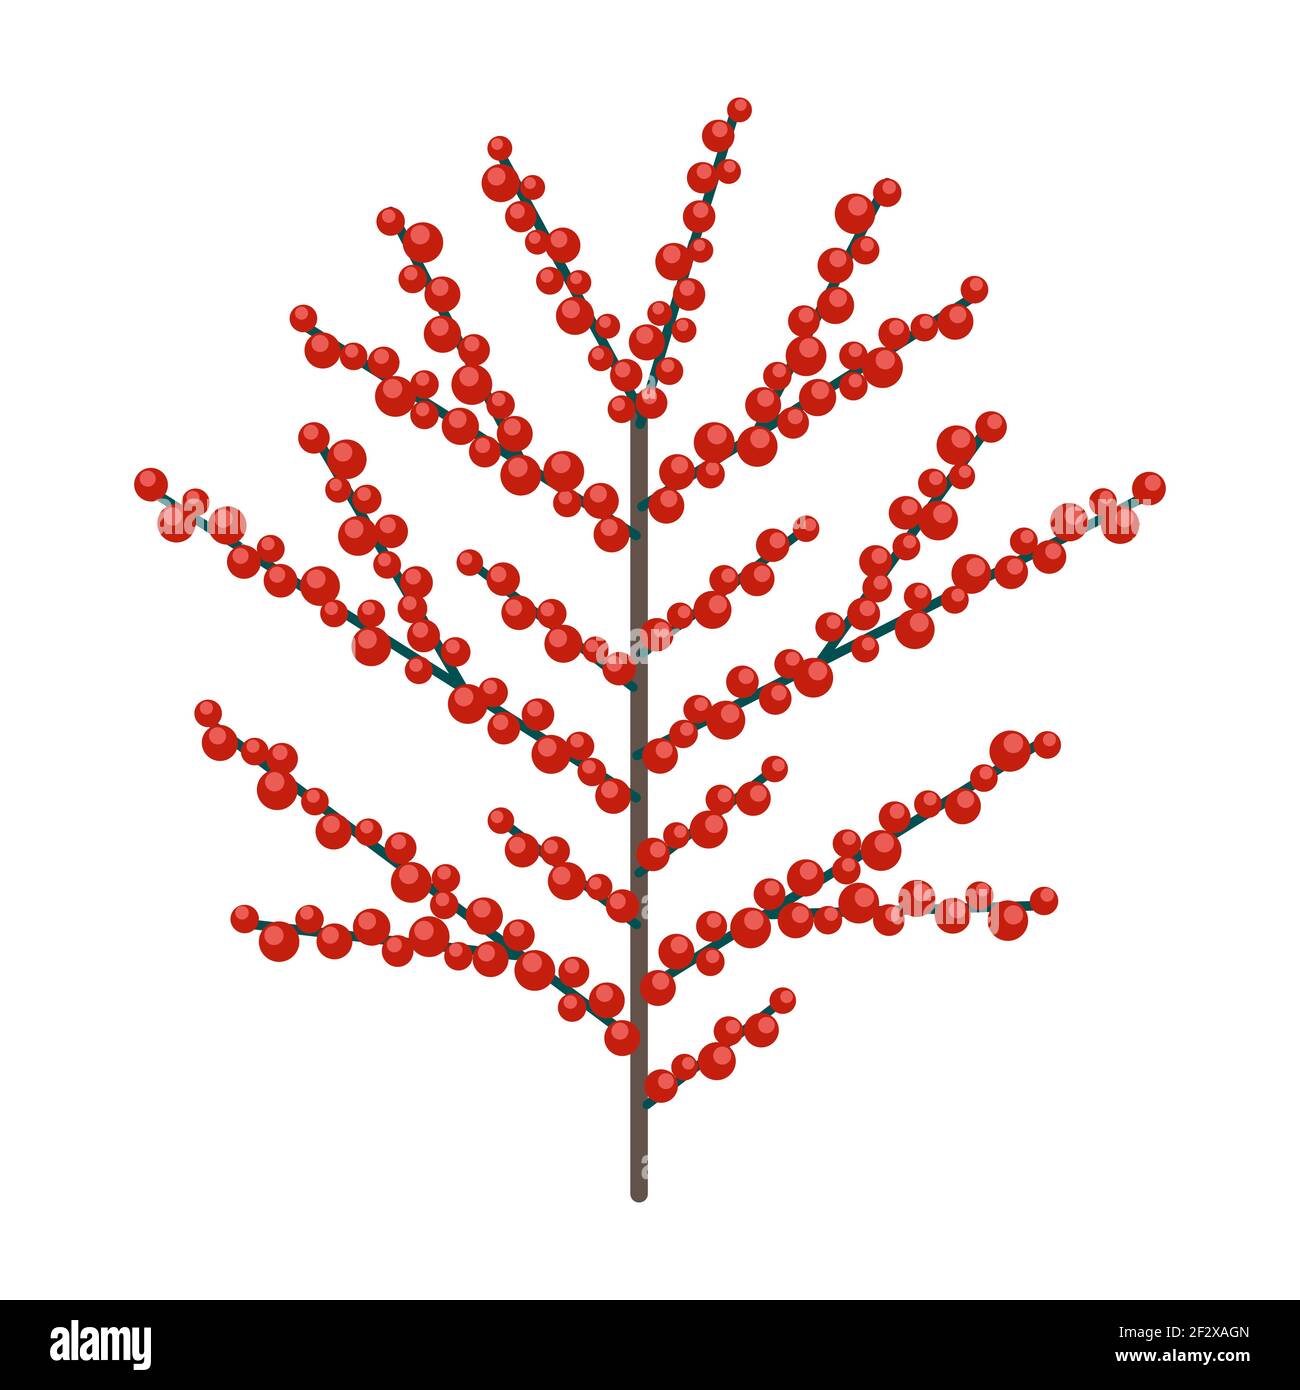 Simple branche minimaliste avec petites baies. Collection florale de plantes élégantes et colorées pour une décoration de saison. Icônes stylisées de la botanique. Stock v Illustration de Vecteur